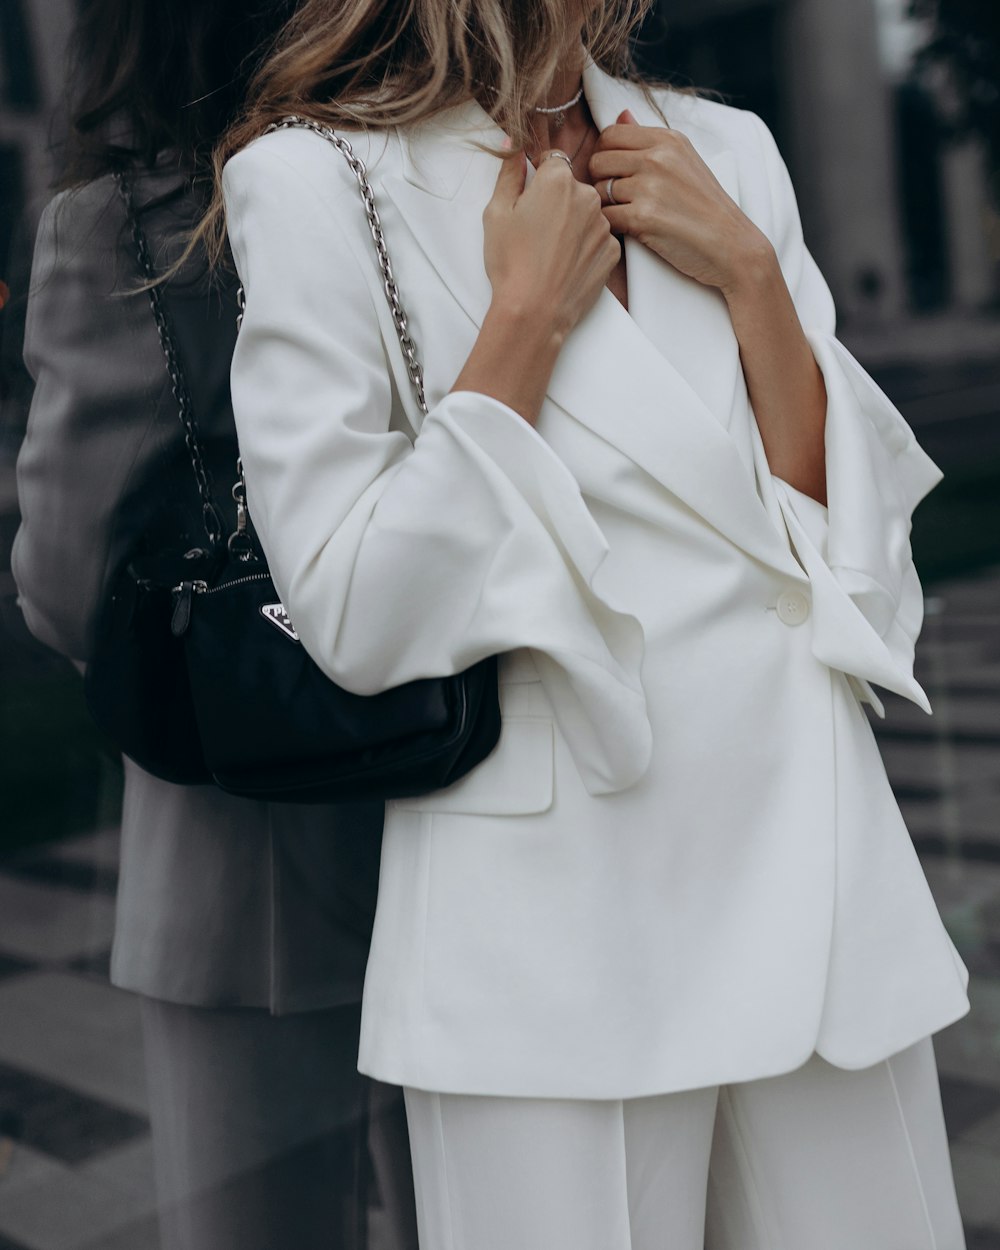 uma mulher vestindo um terno branco e segurando uma bolsa preta